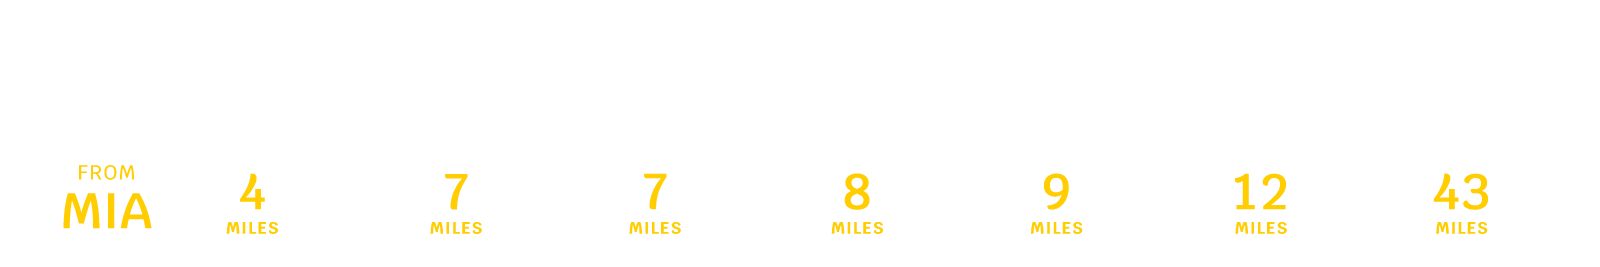 Miami, FL distance chart